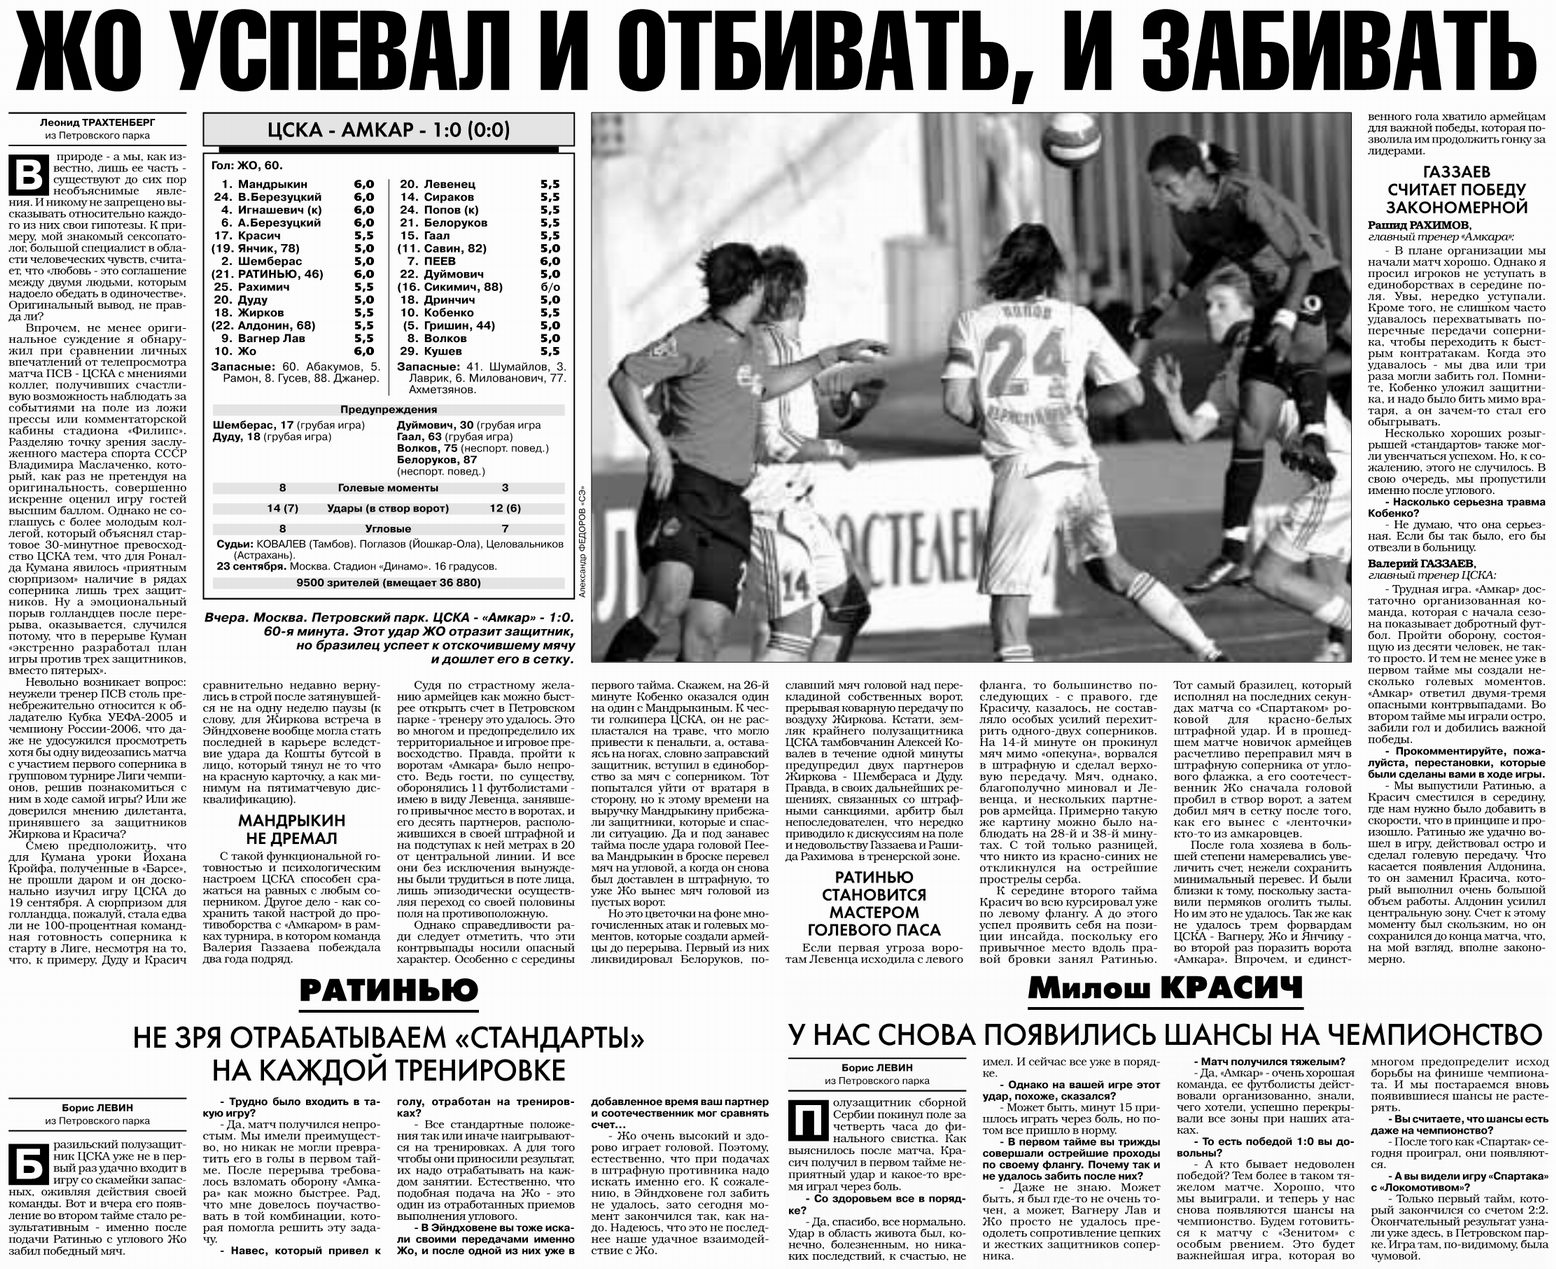 2007-09-23.CSKA-Amkar.1